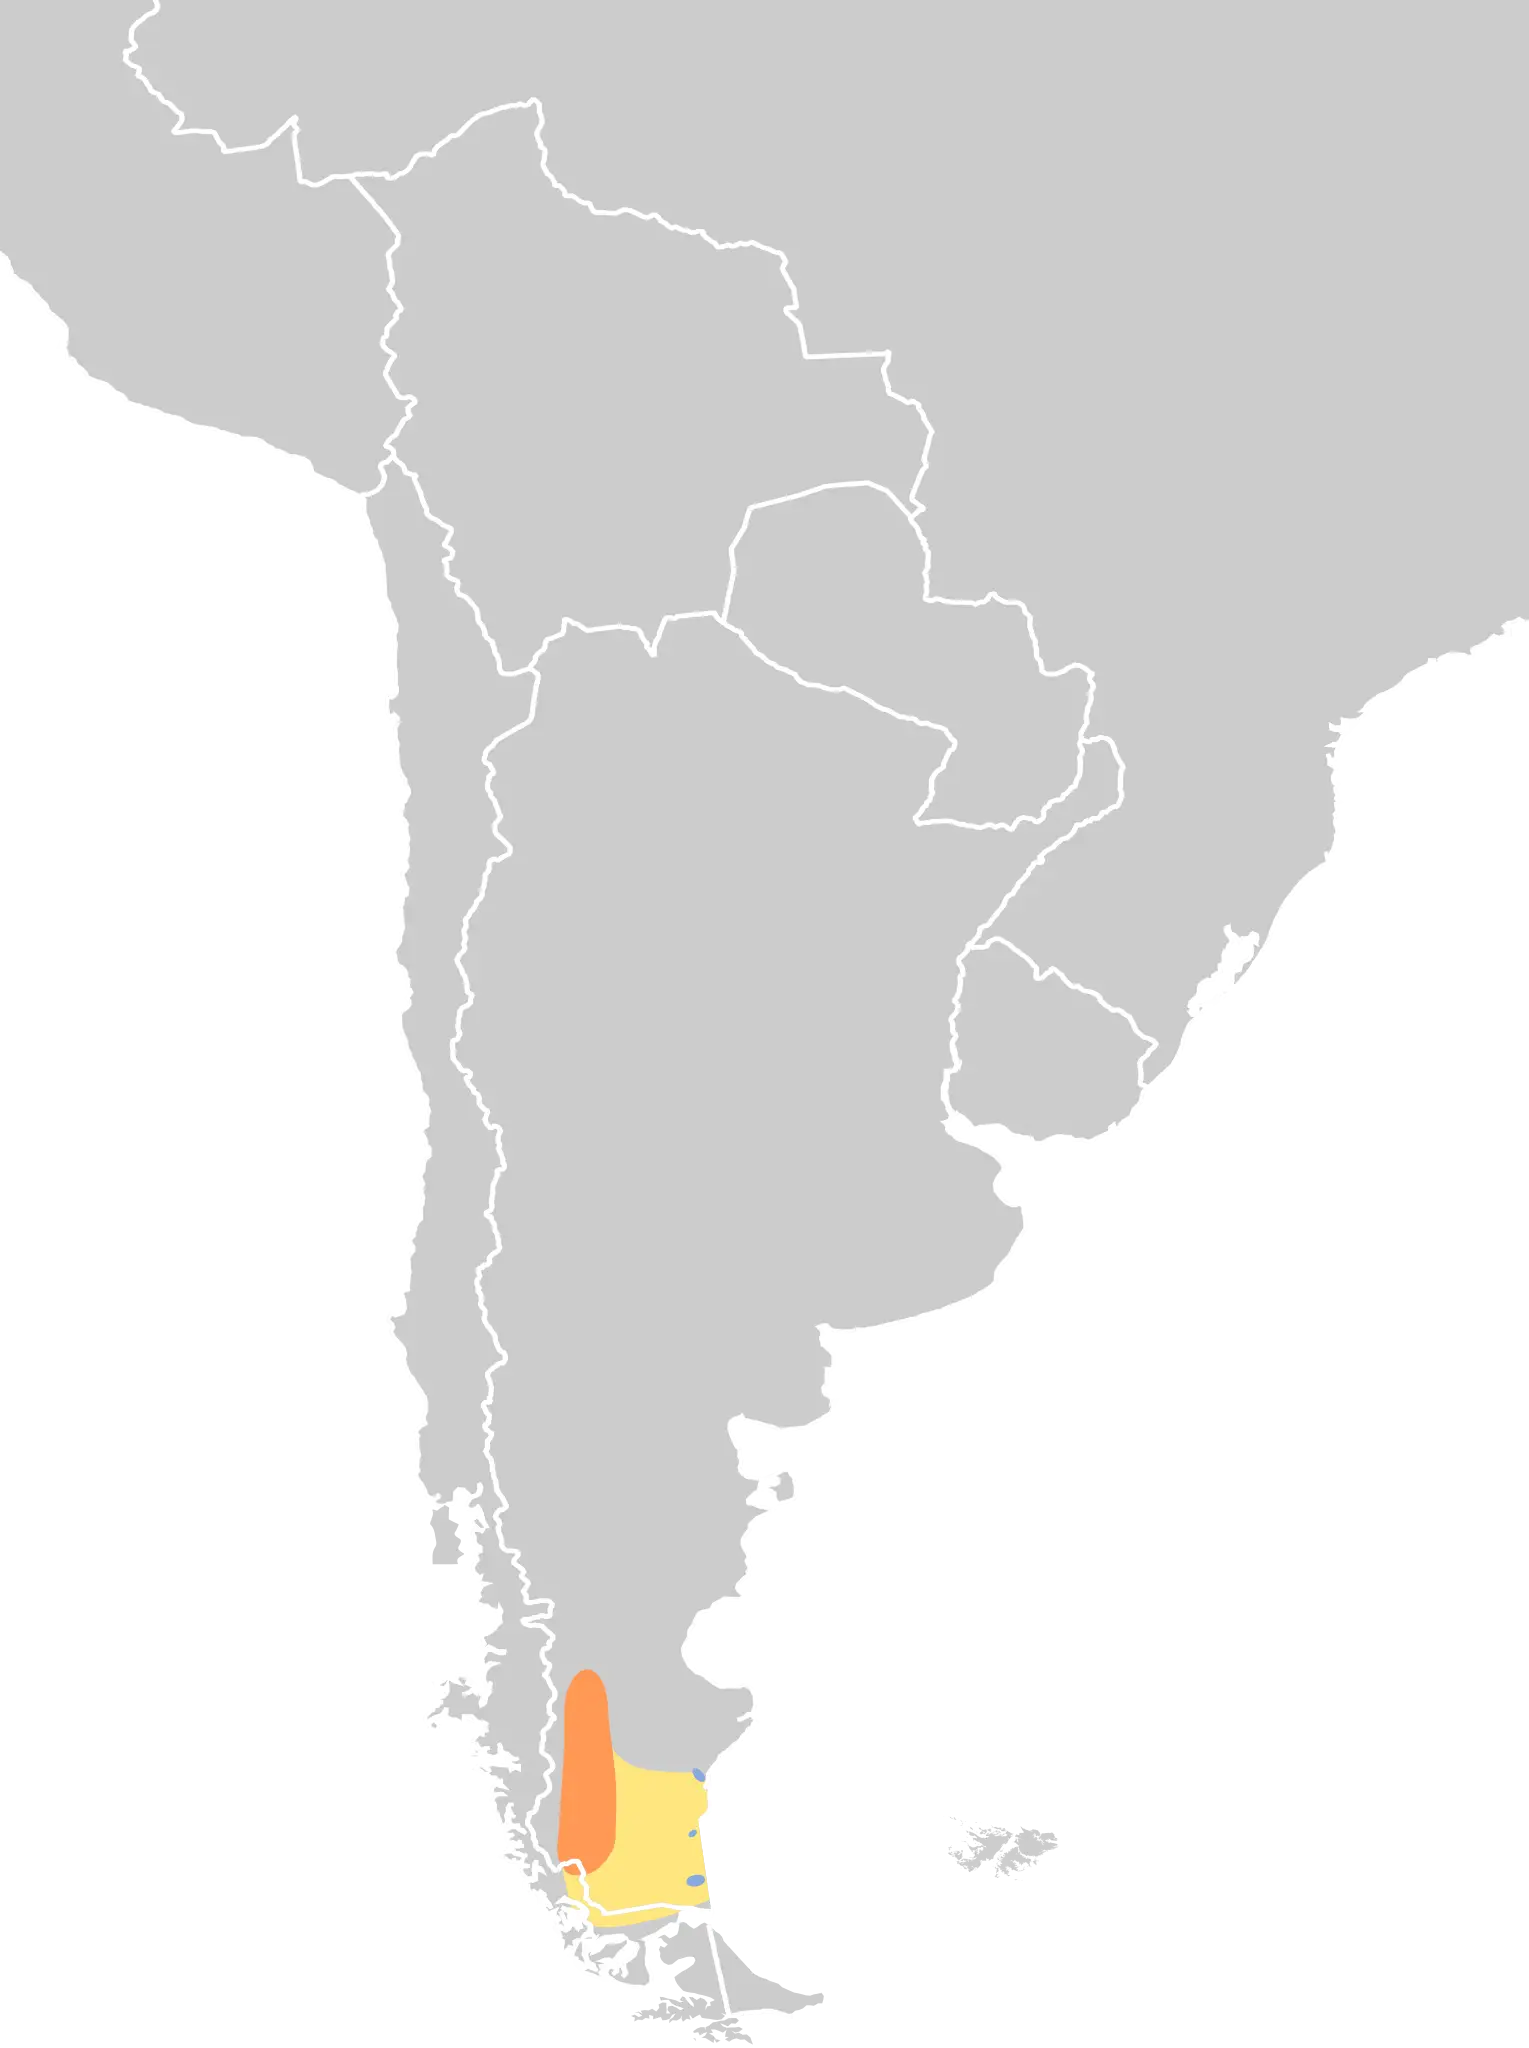 Пірникоза аргентинська карта середовища проживання